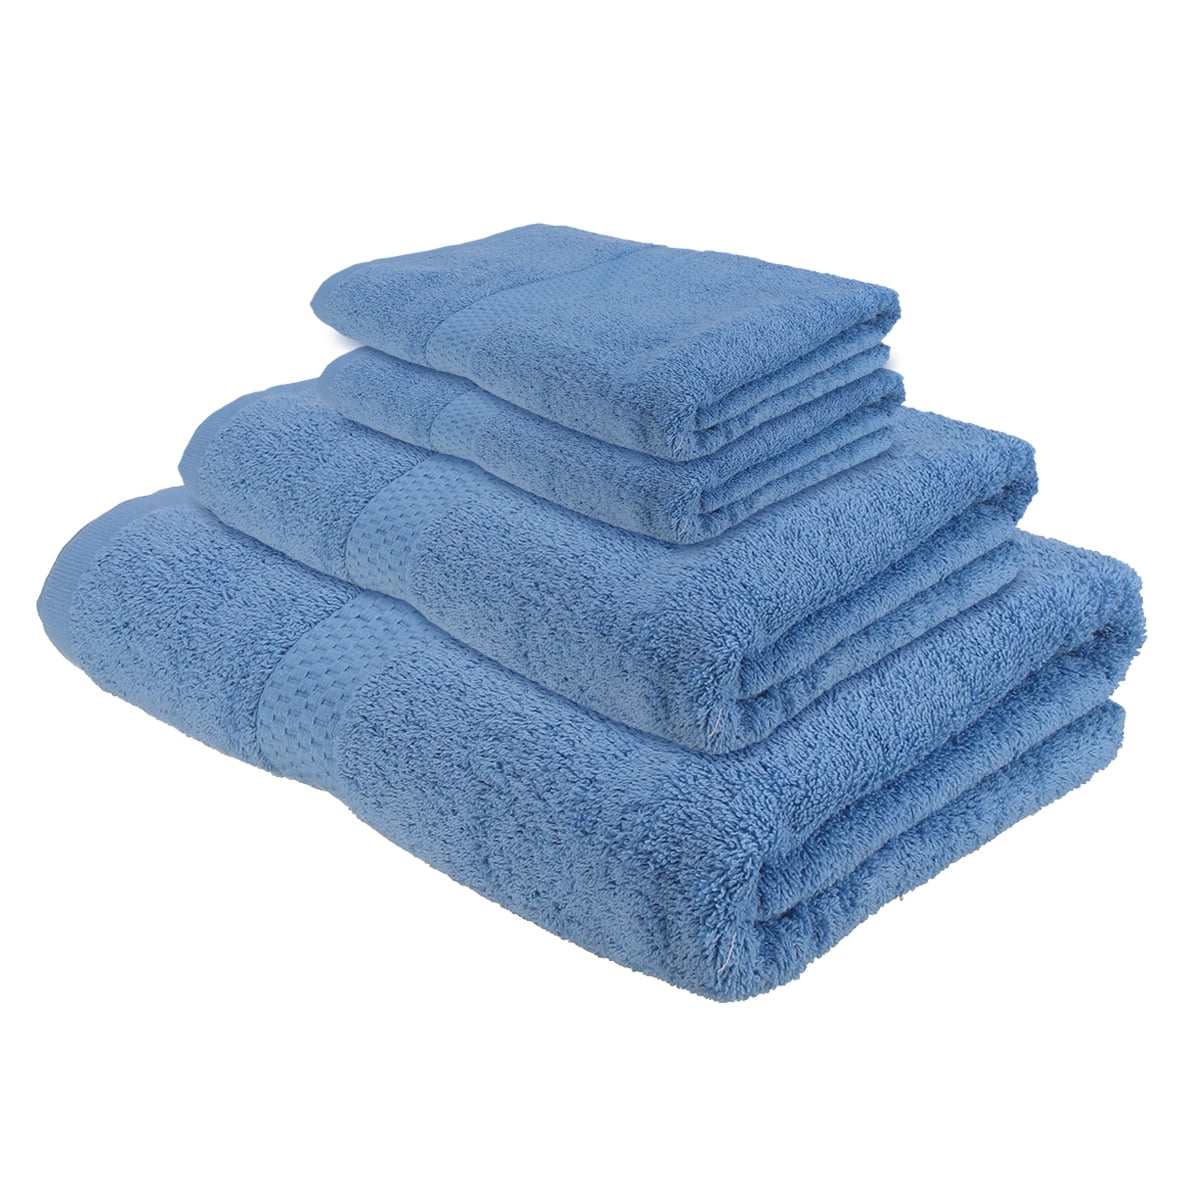 29*13.4 inch LUXURY TOWEL 100% COTTON HAND BATH BATHROOM TOWELS 74cm x 34cm 